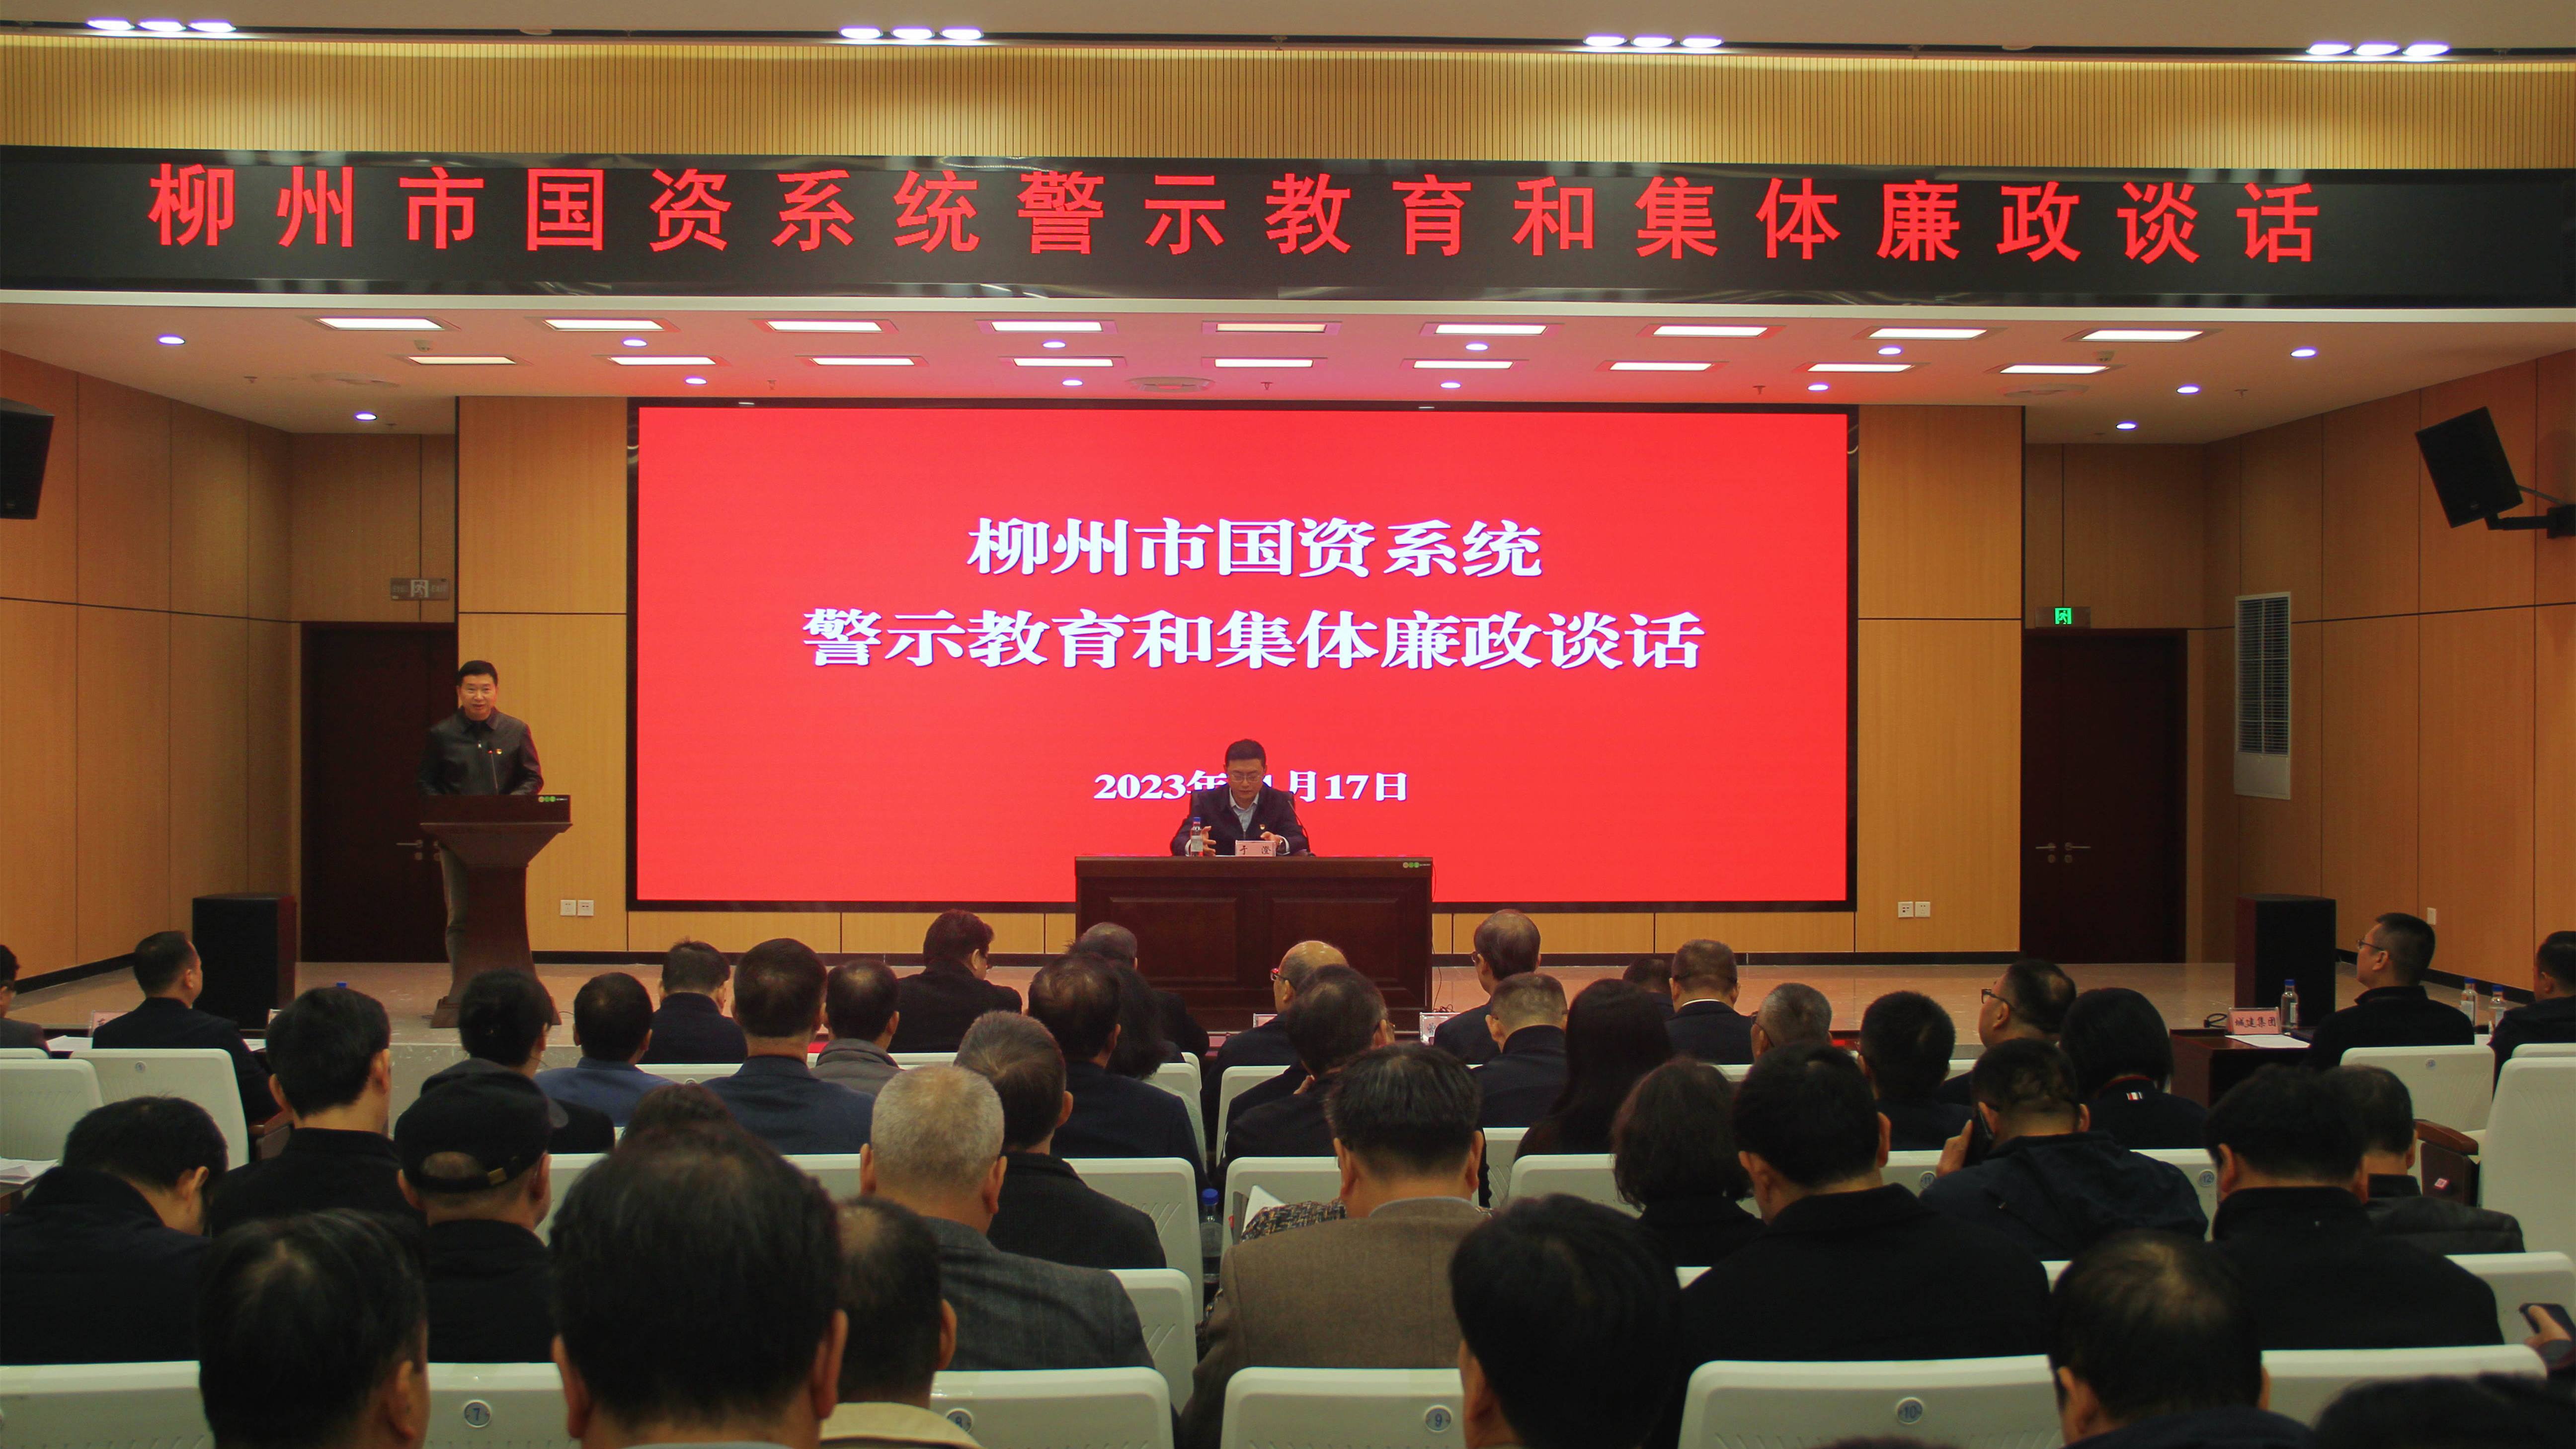 柳州市国资委党委召开警示教育暨集体廉政谈话会议